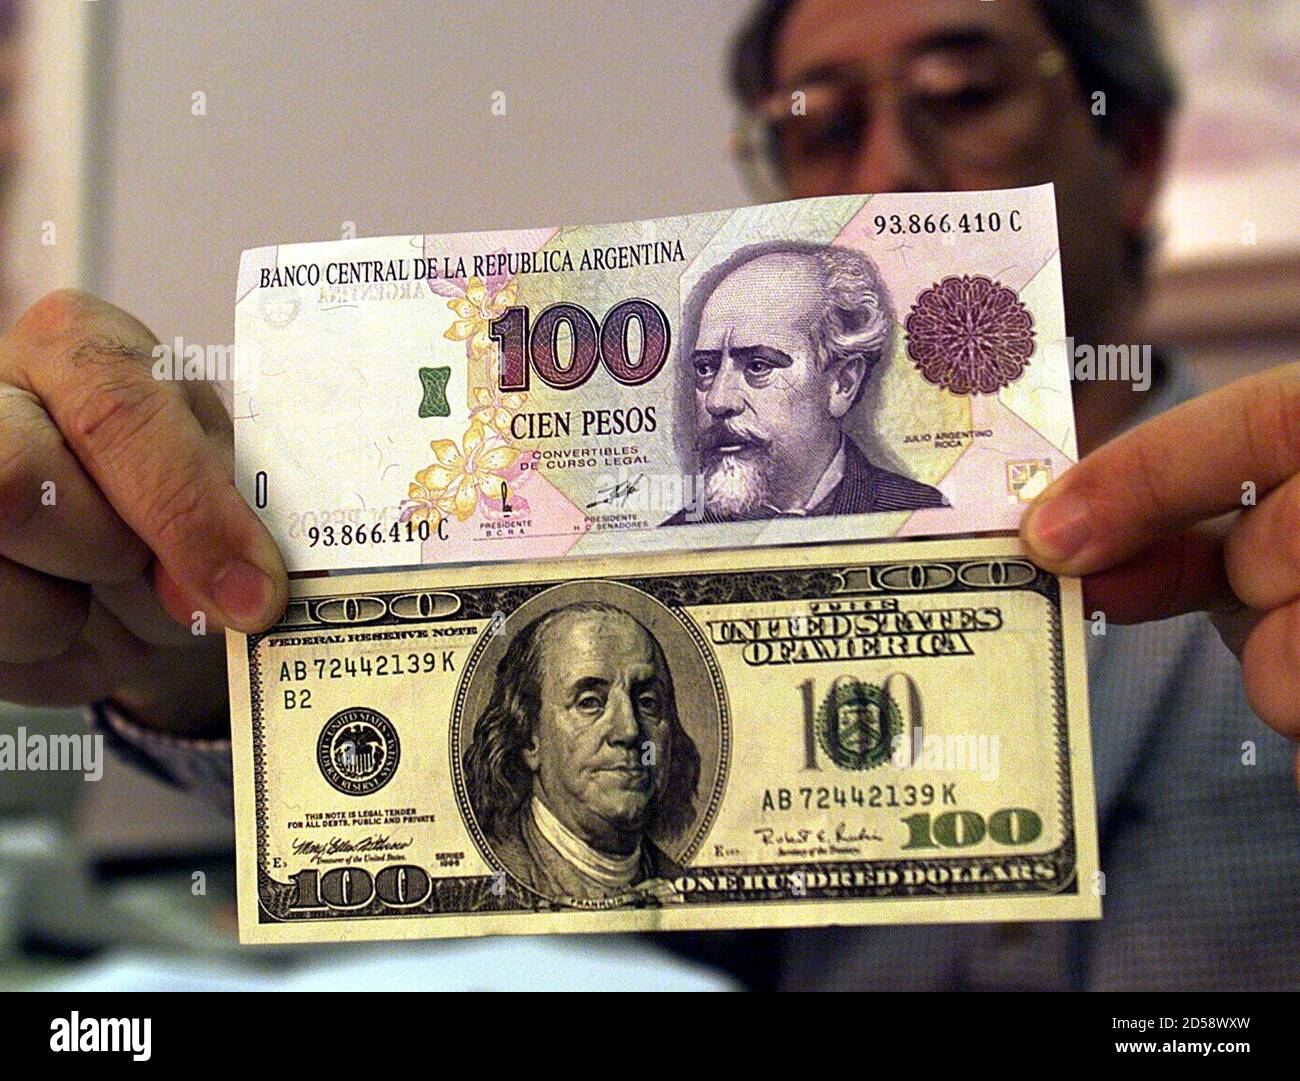 Un economista argentino tiene un proyecto de ley de $100 junto con un  billete de 100 pesos argentinos de exactamente el mismo valor en la  economía local, enero de 19. Bajo el